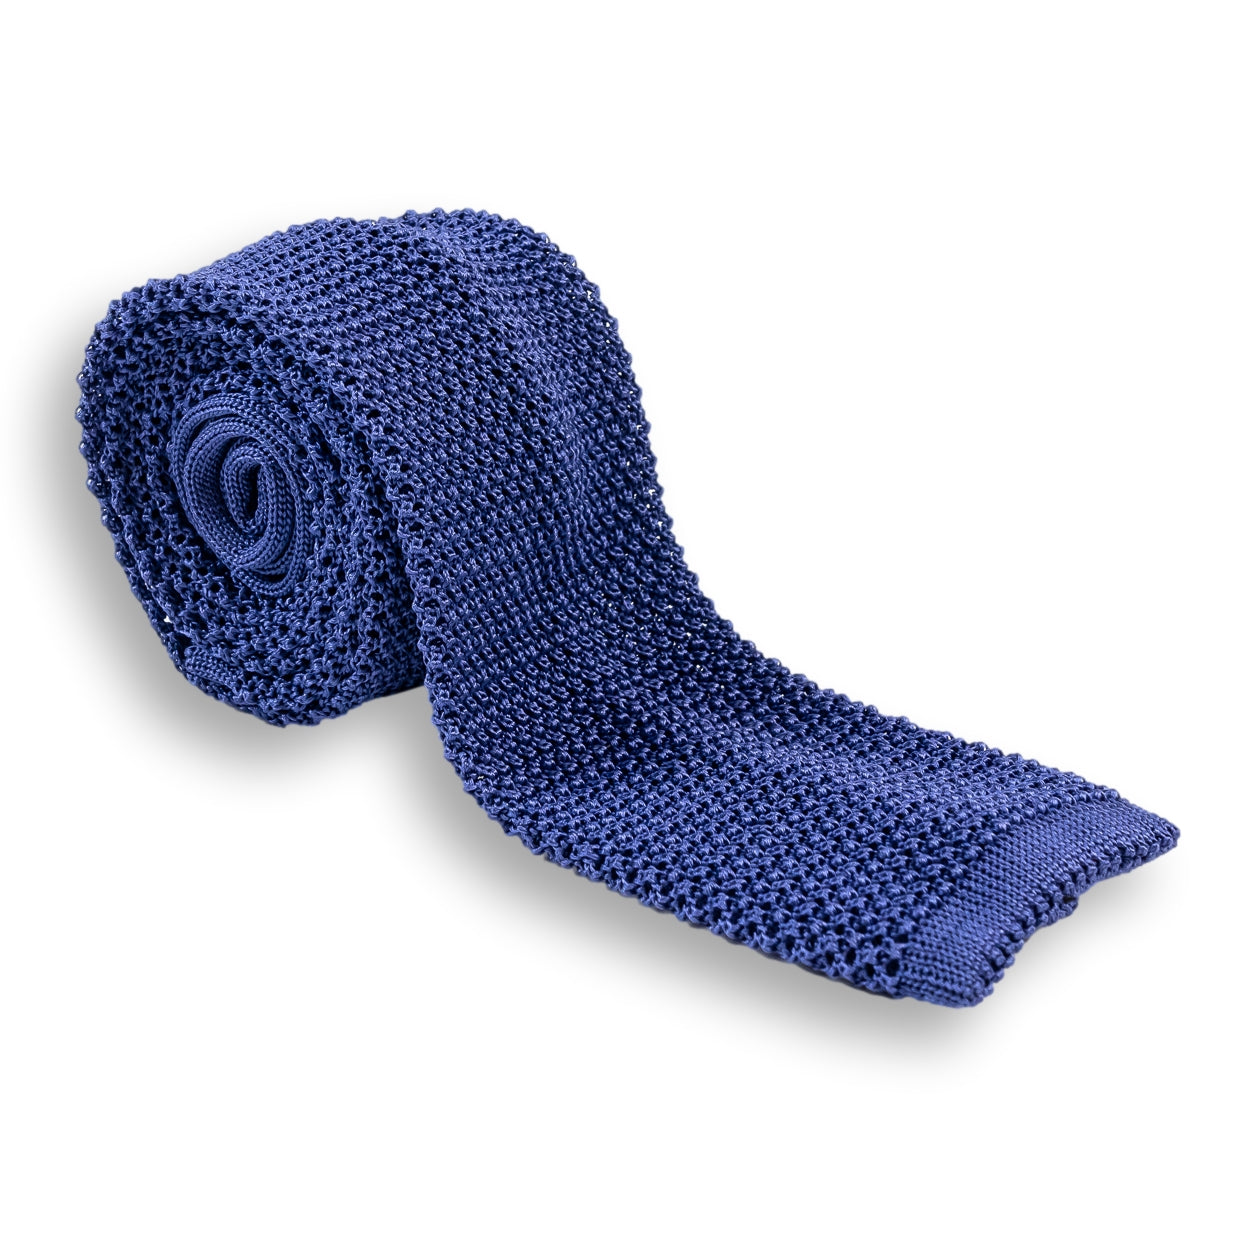 100% Silk Knit Tie